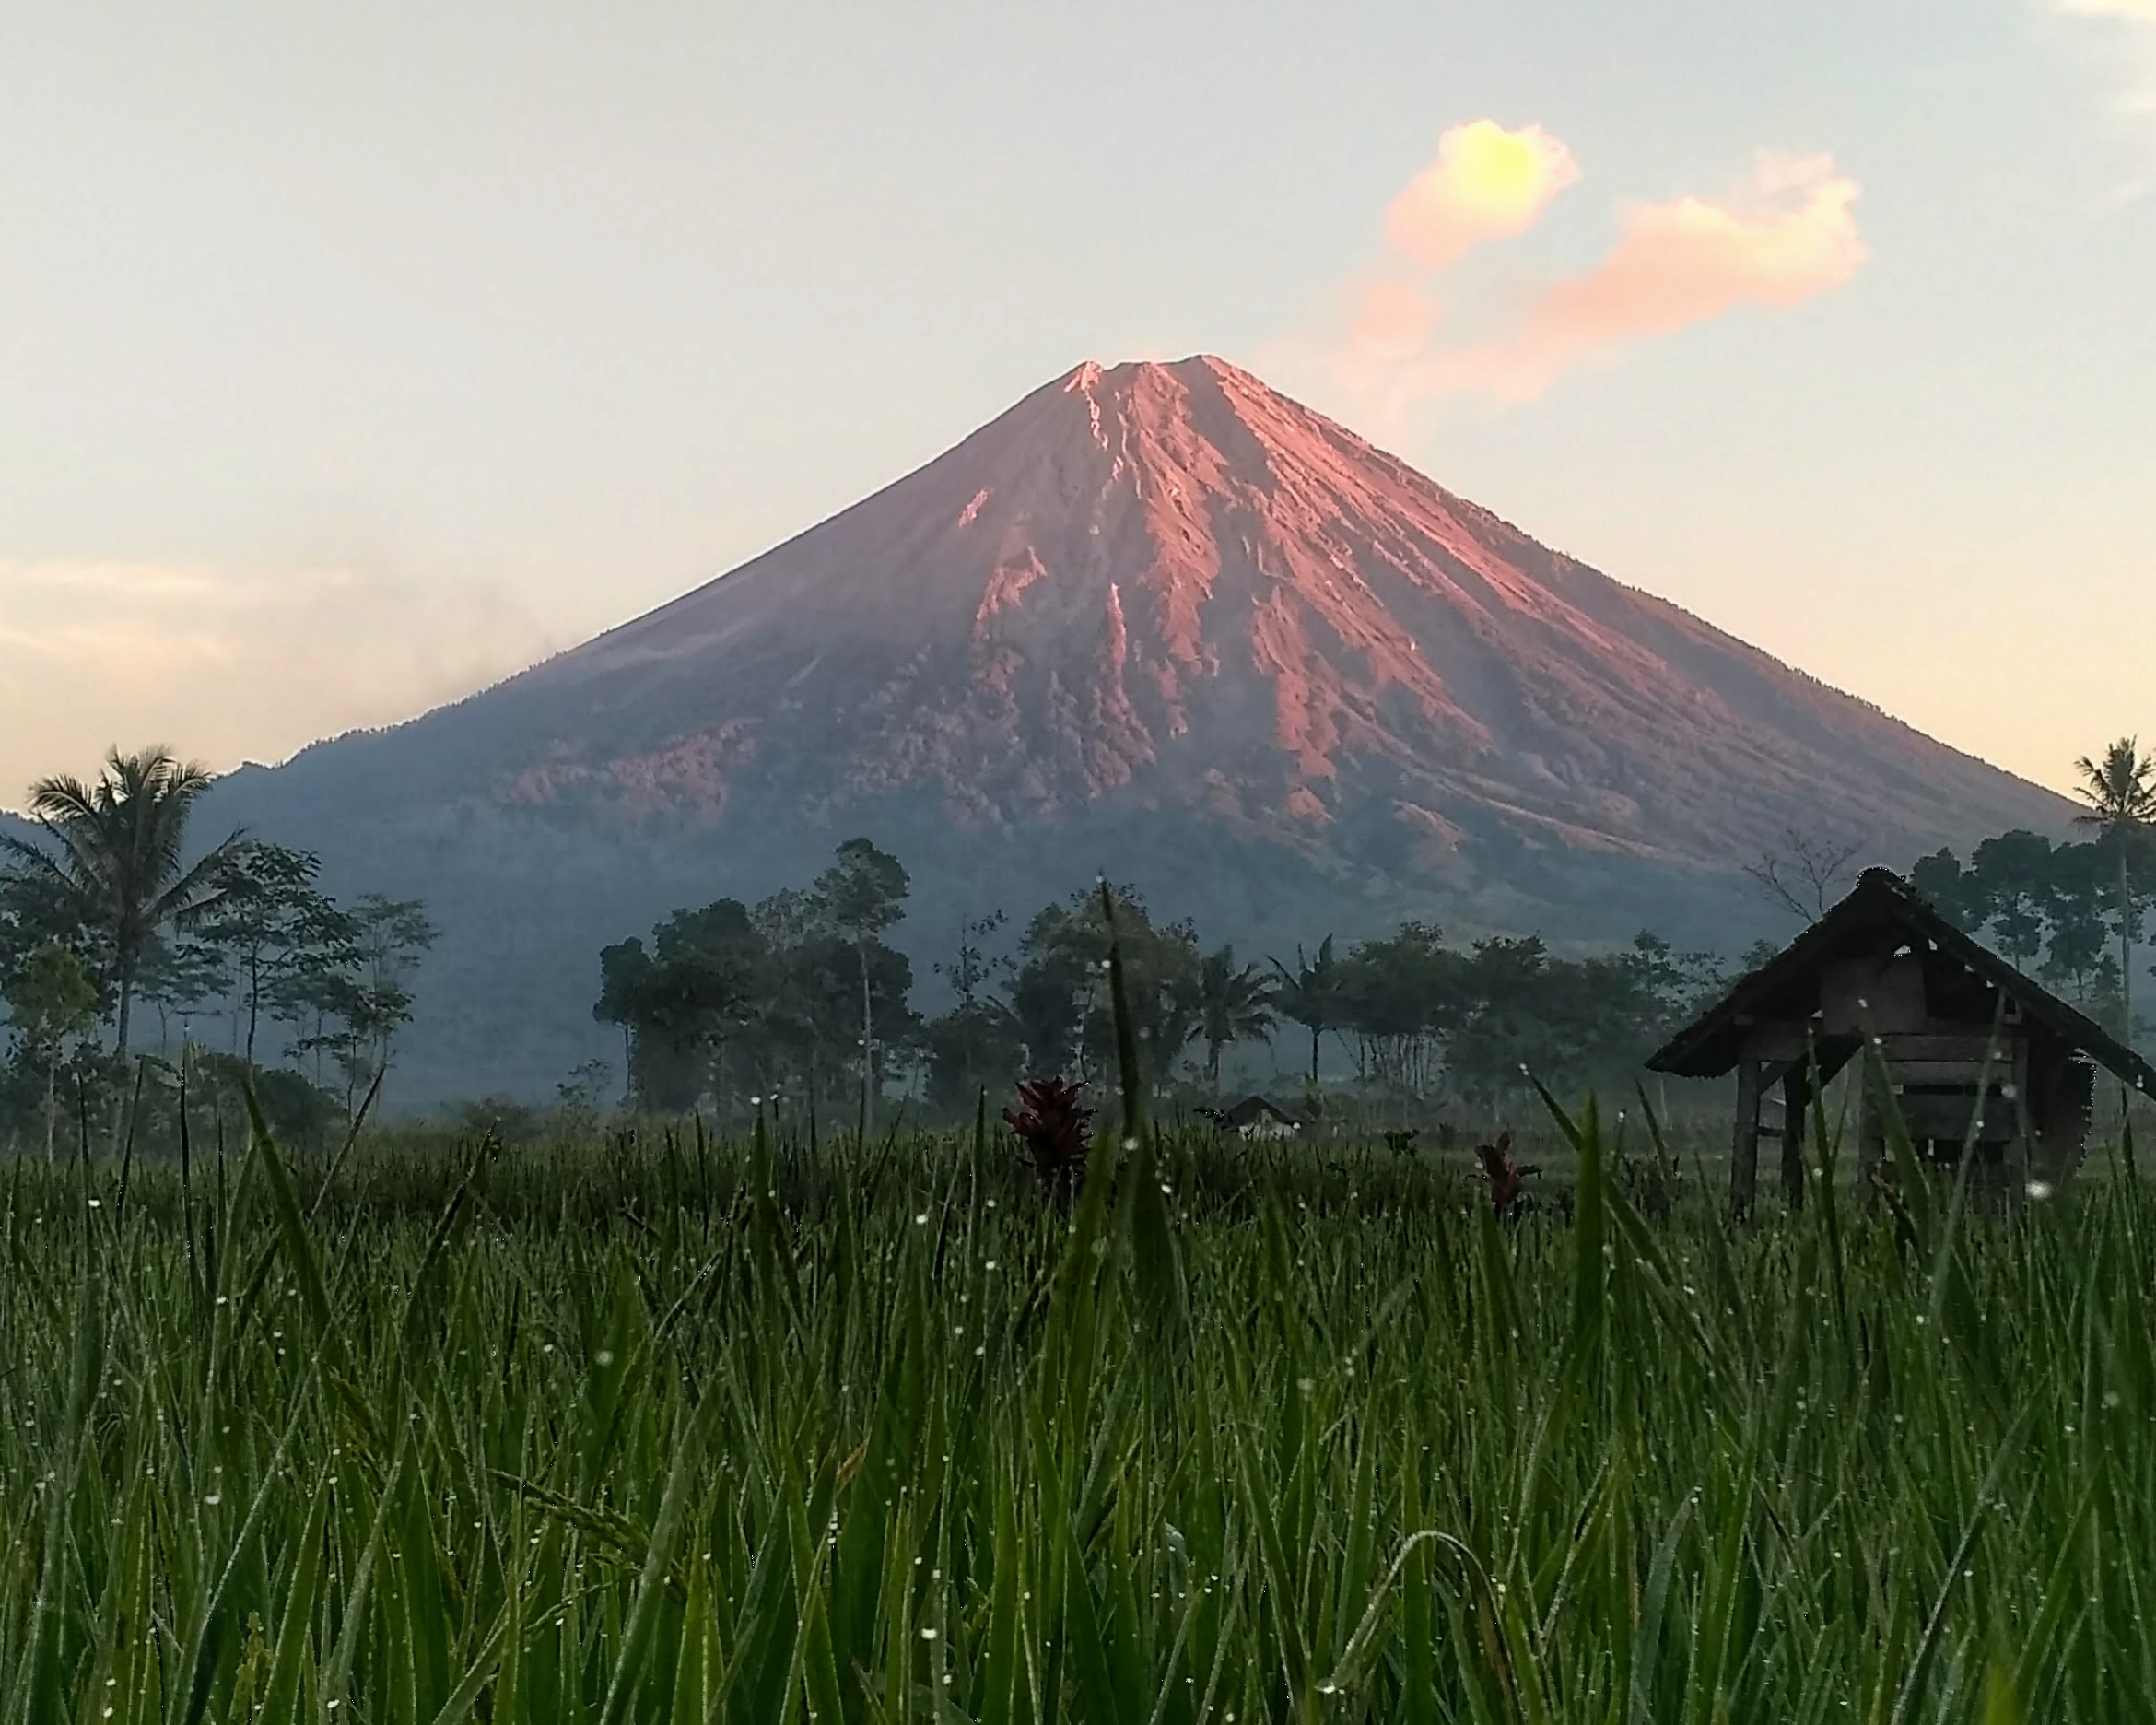 Menikmati gagahnya Gunung Semeru dari kejauhan (c) Welly Handoko/Travelingyuk